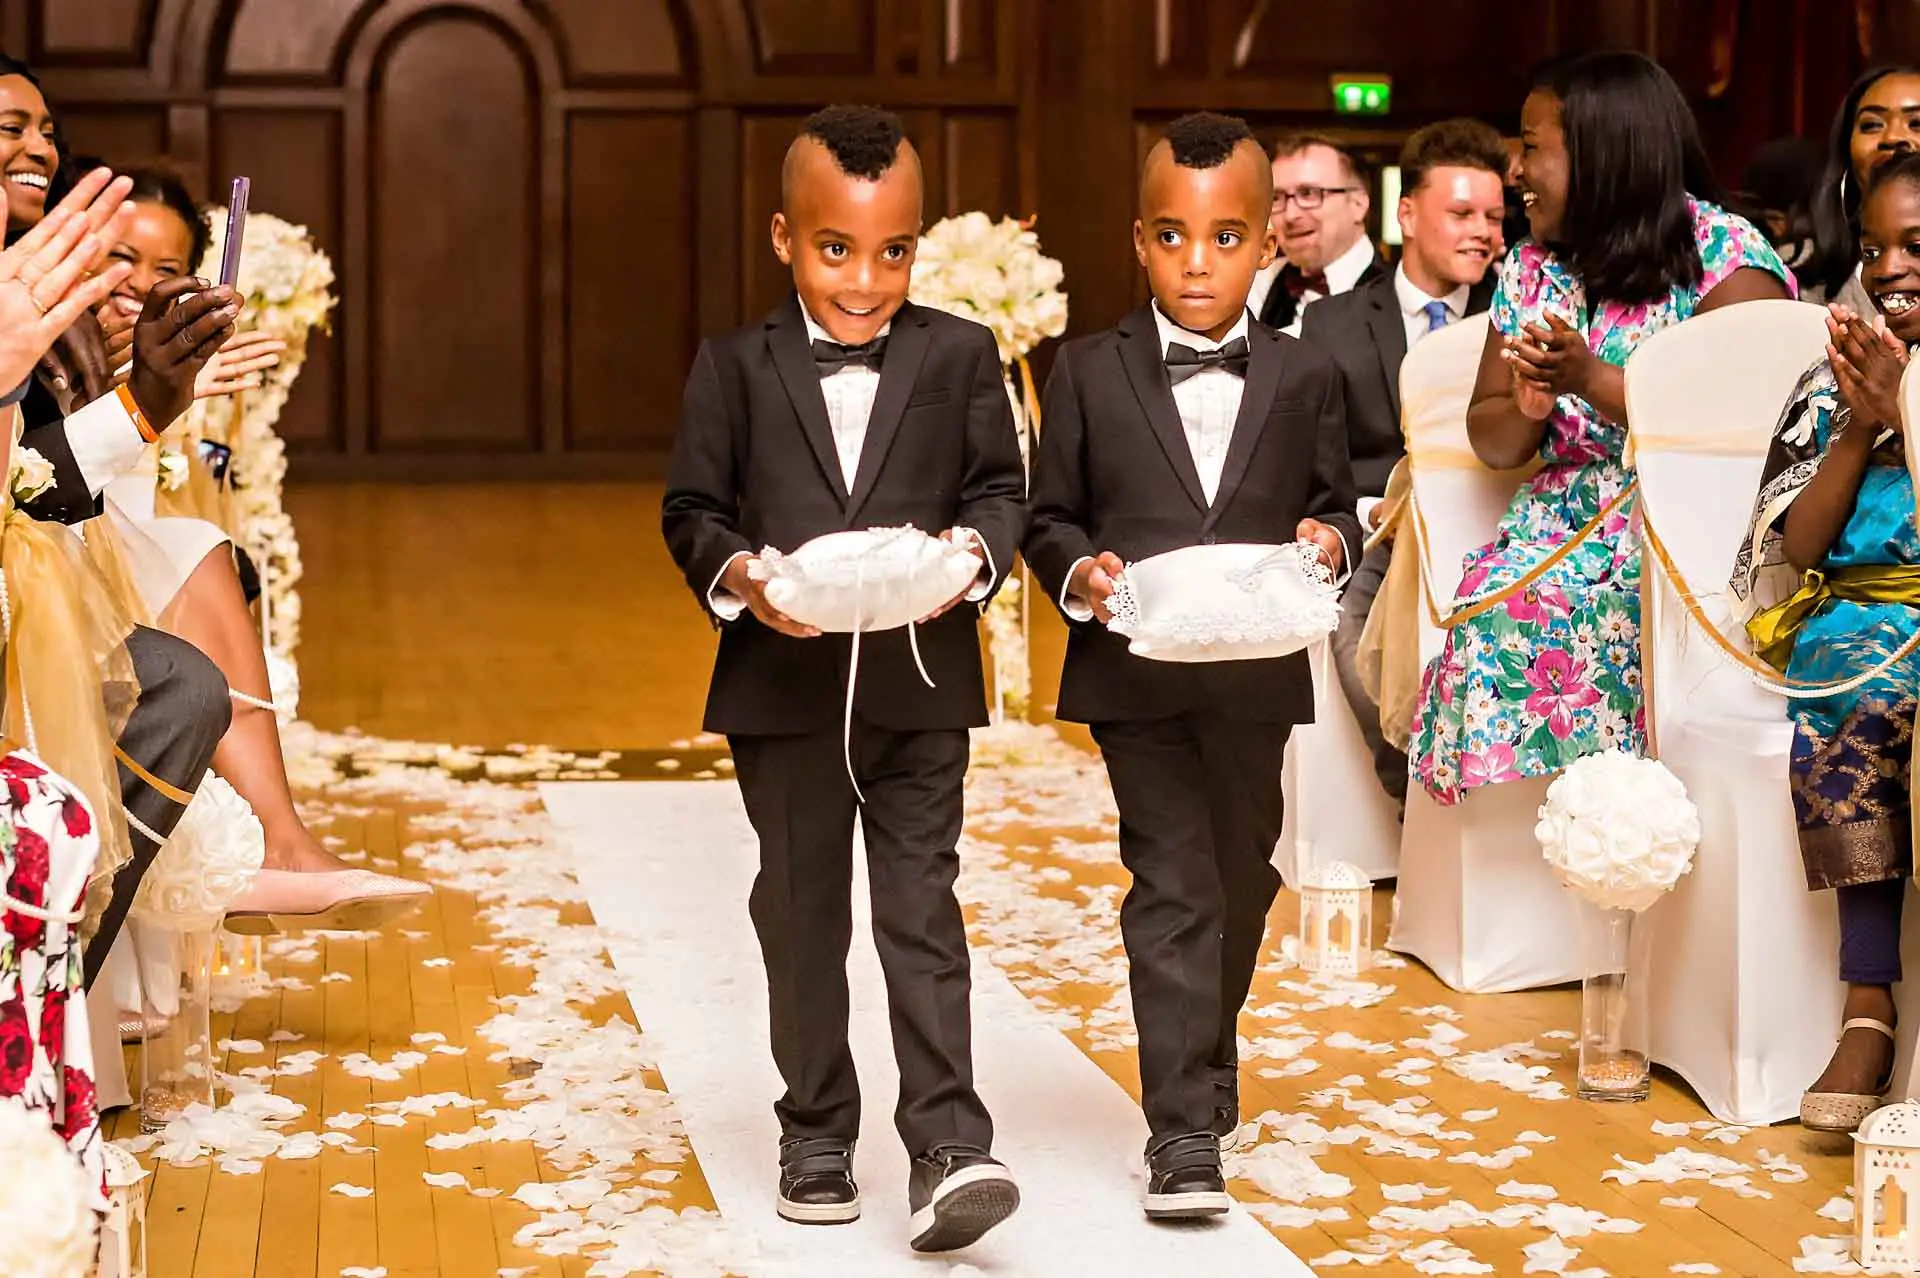  kaksi pageboys kuljettaa renkaat alas käytävällä Porchester Hall wedding